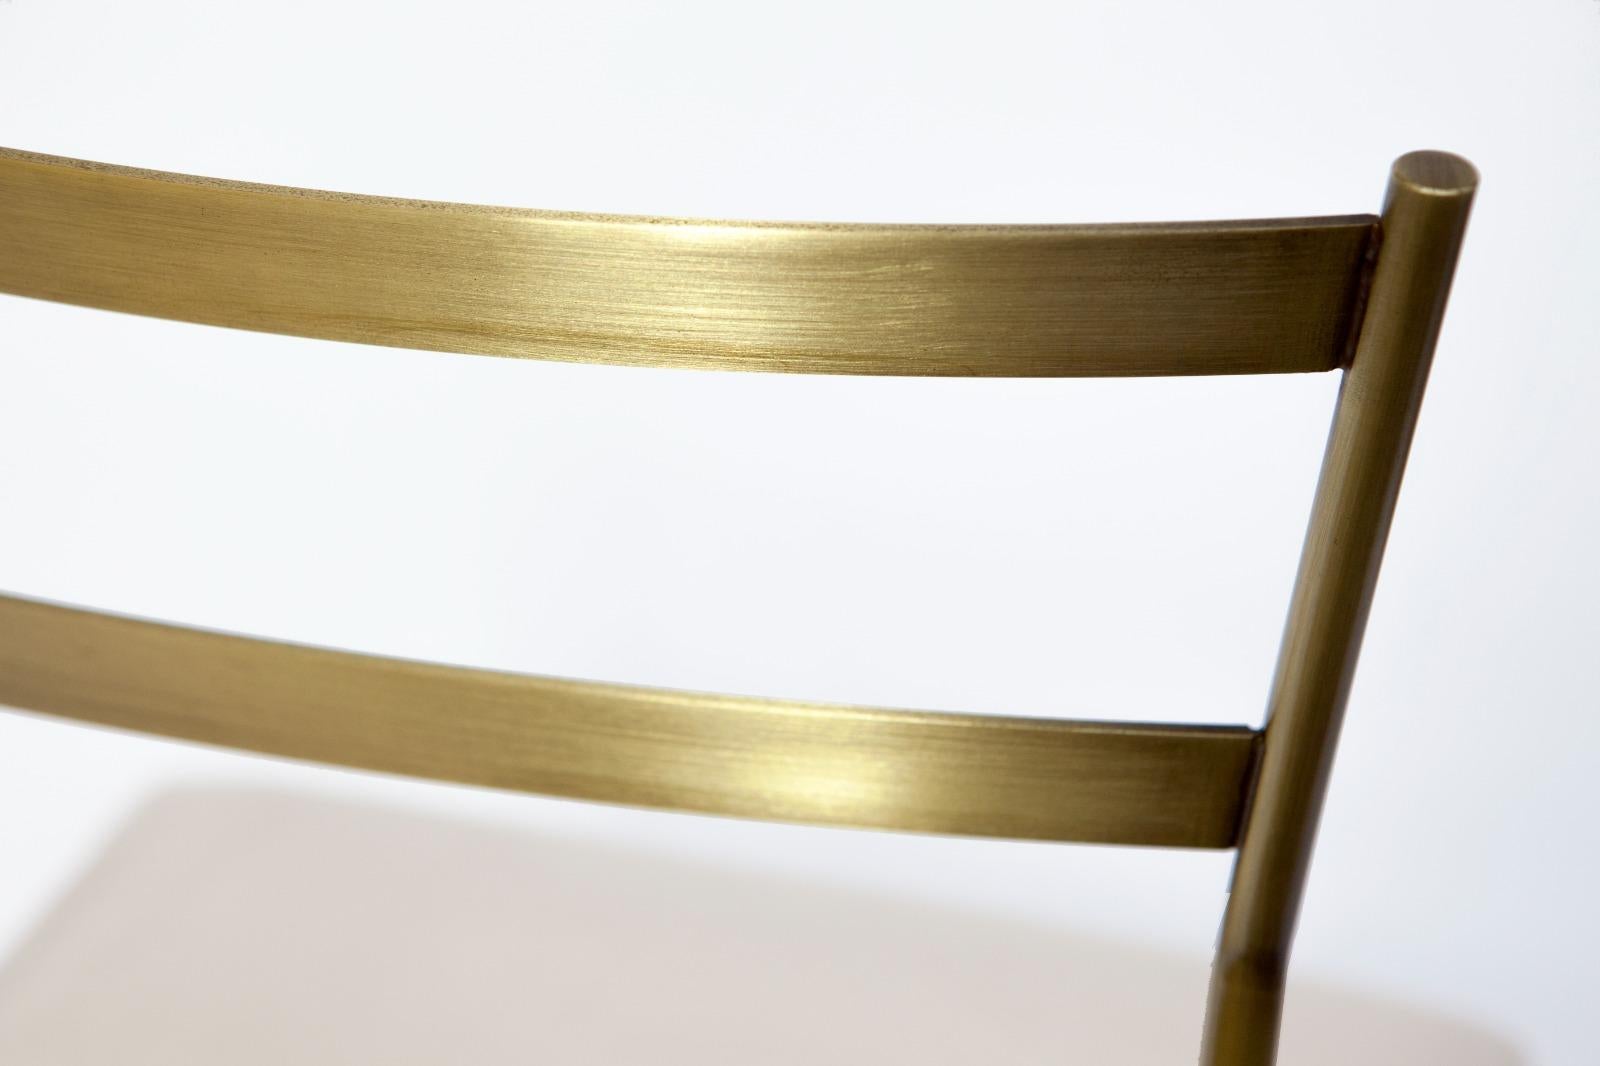 Dieser kunstvoll von Hand gefertigte Pontina-Stuhl setzt mit seiner schlichten Eleganz einen markanten Akzent in einer anspruchsvollen zeitgenössischen Einrichtung. Die minimalistische Silhouette ist vollständig handgefertigt und besteht aus